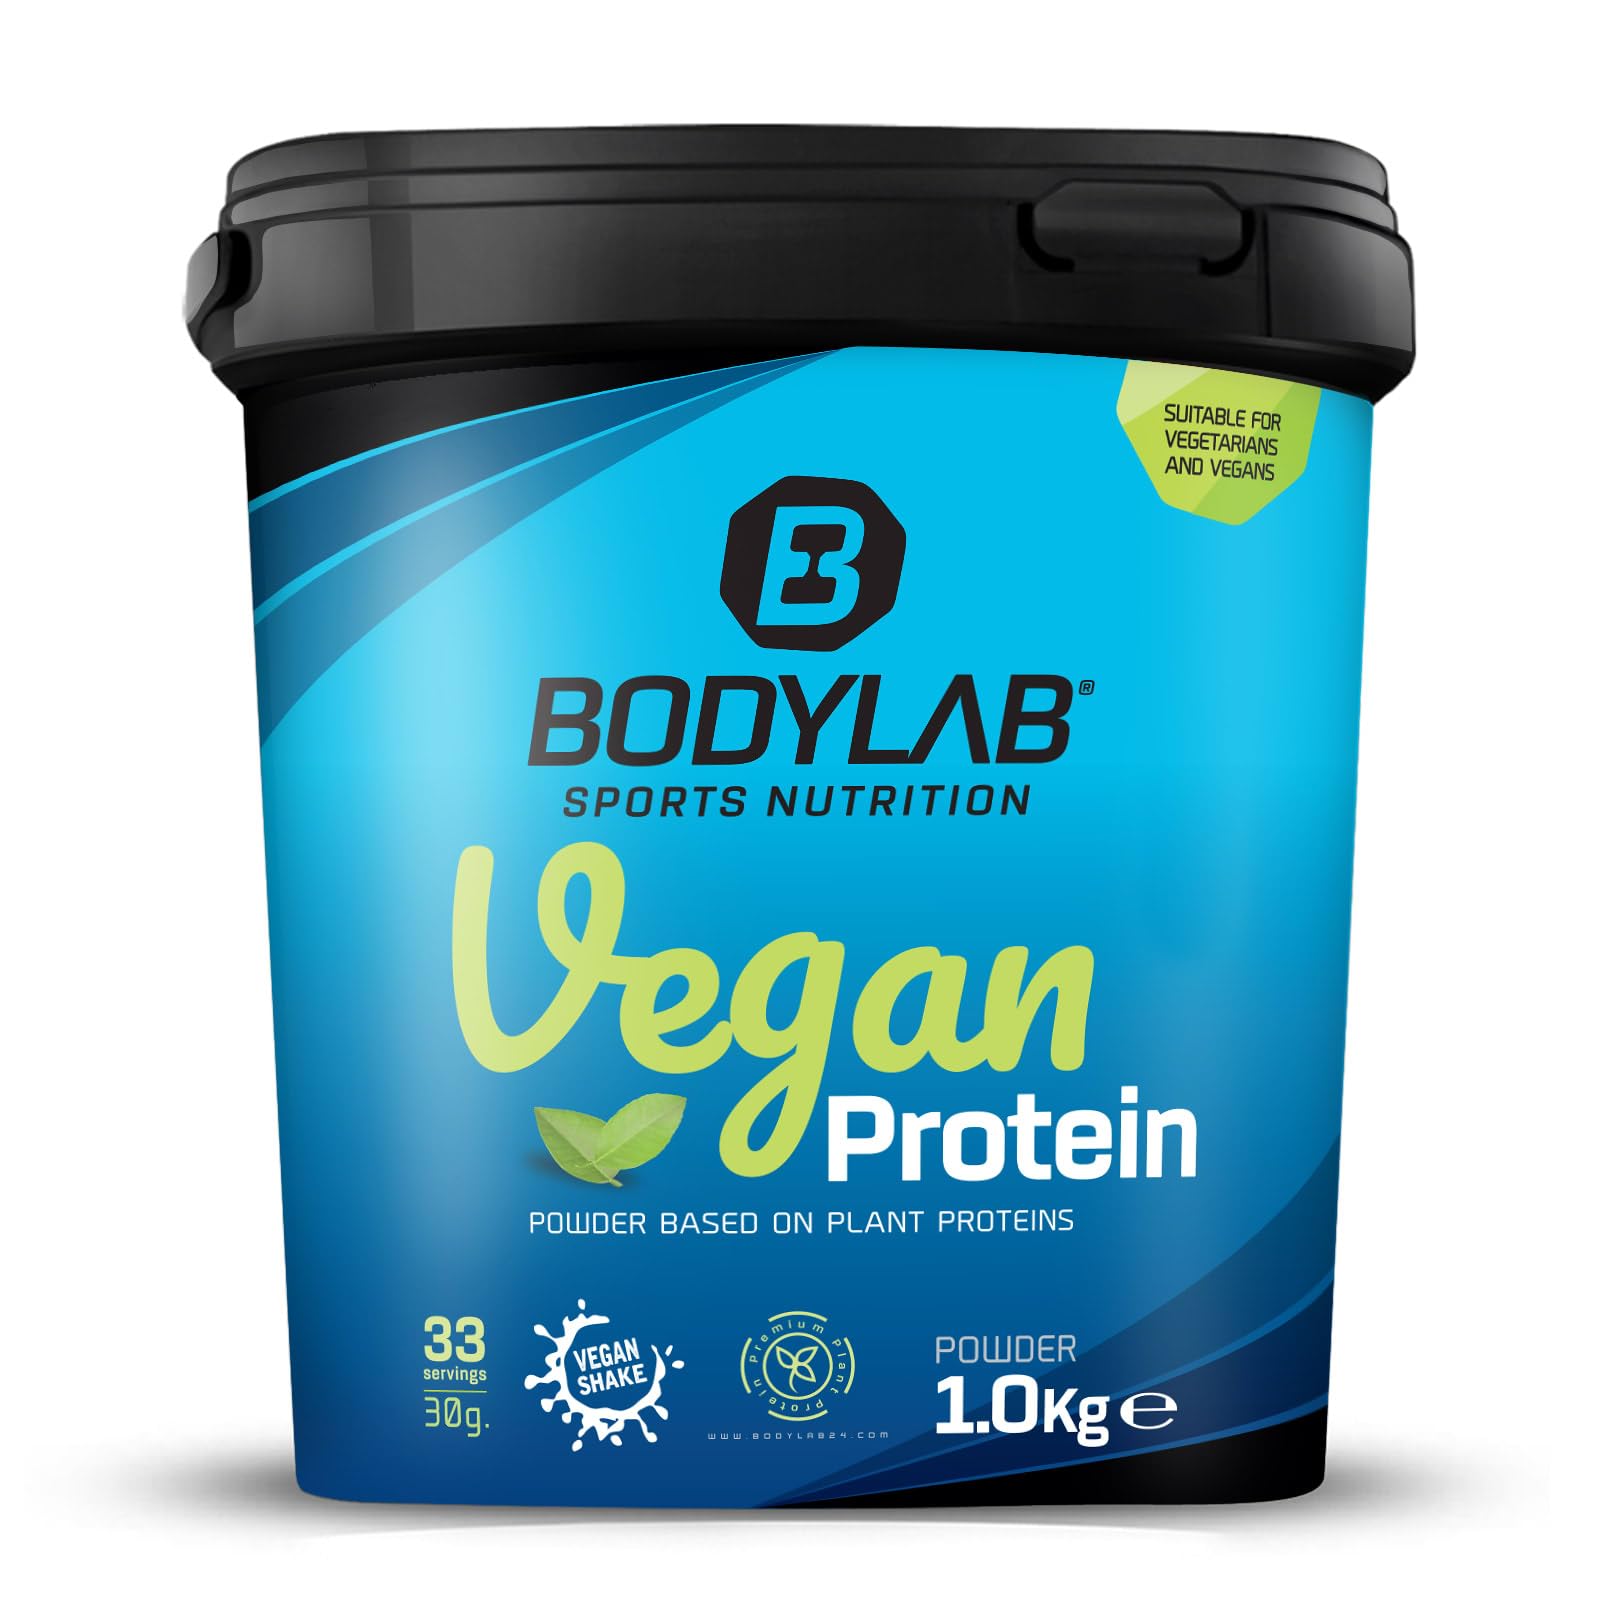 Bodylab24 Vegan Protein Bananenbrot 1000g, 100% veganes Proteinpulver aus Ackerbohnen, Erbsen- und Kürbiskernprotein, mit 80g Eiweiß je 100g Pulver, ideal für den Muskelaufbau und -erhalt